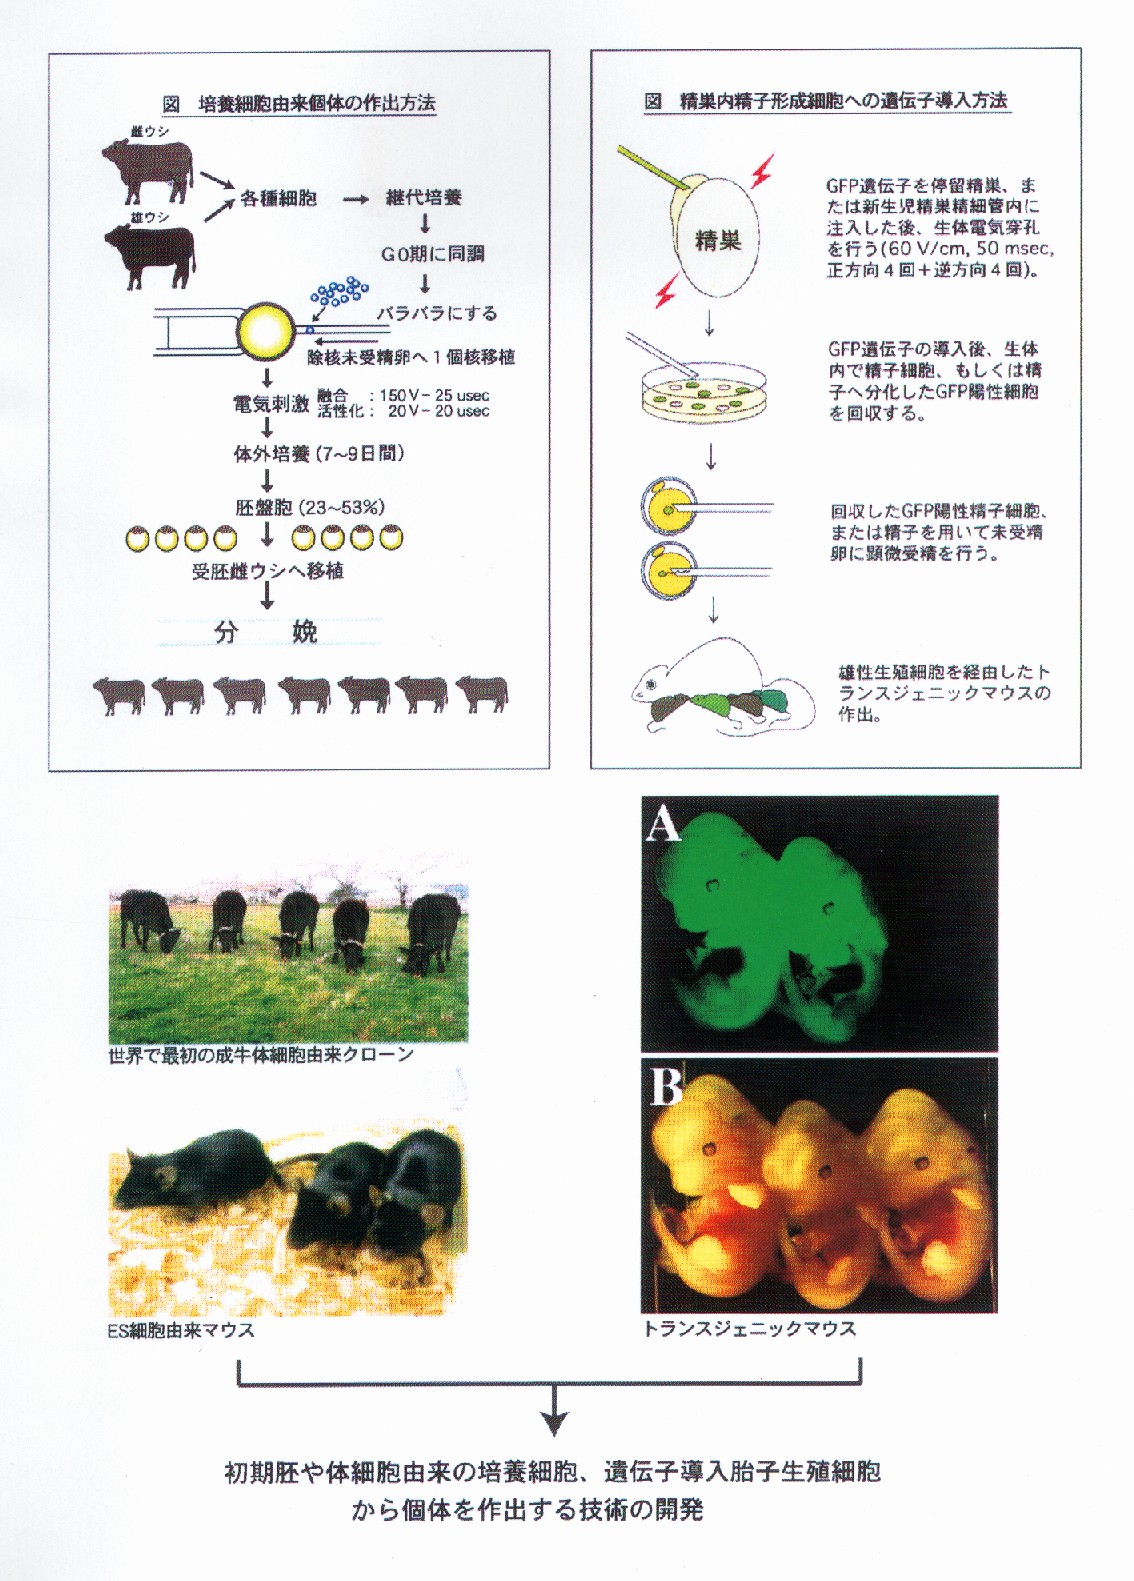 継代培養細胞を用いた家畜繁殖技術の開発に関する研究